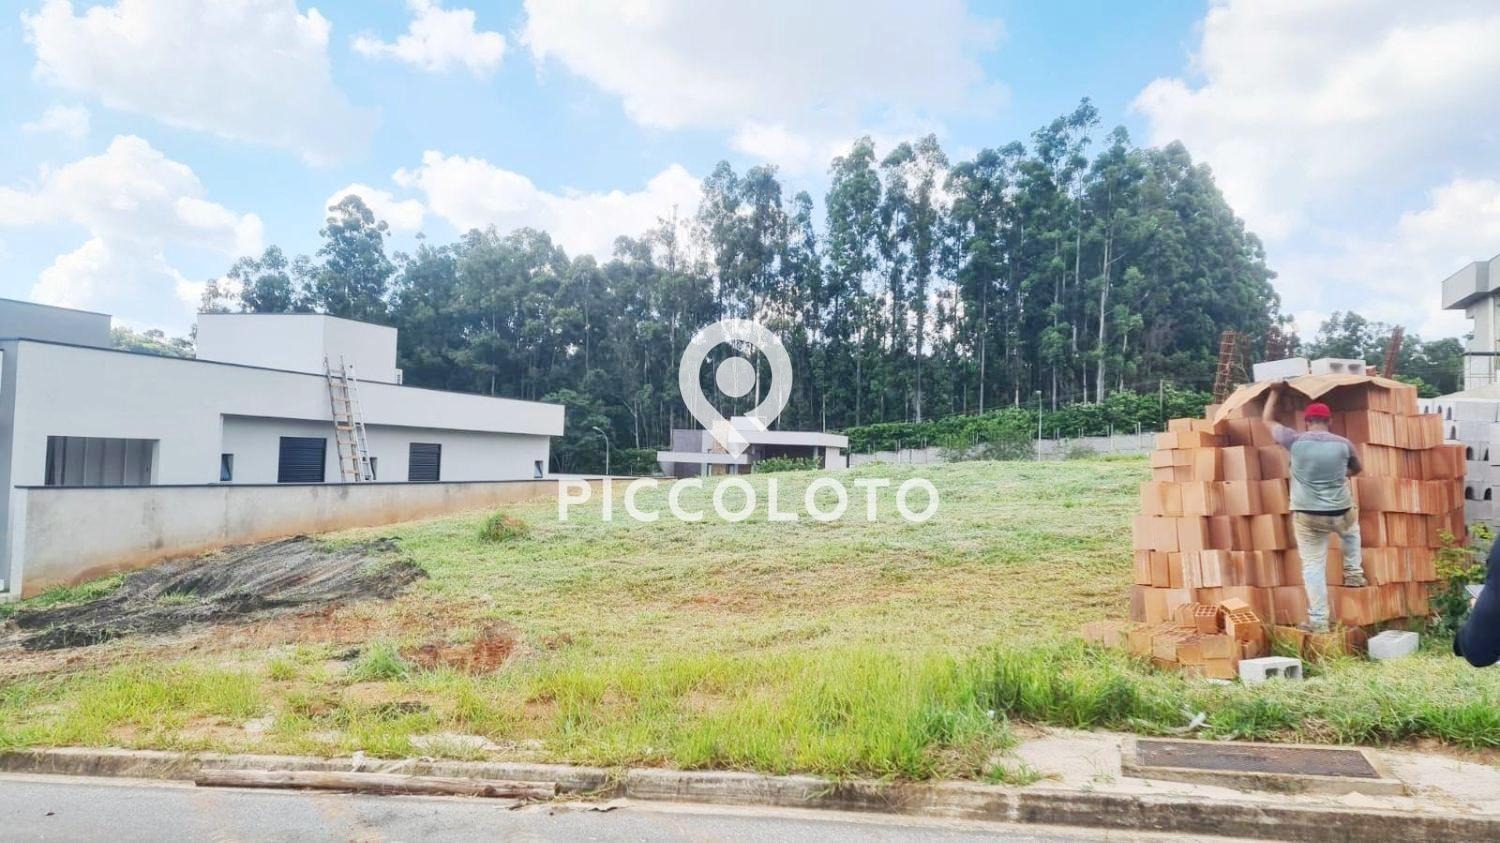 Piccoloto -Terreno à venda no Jardim Portugal em Valinhos